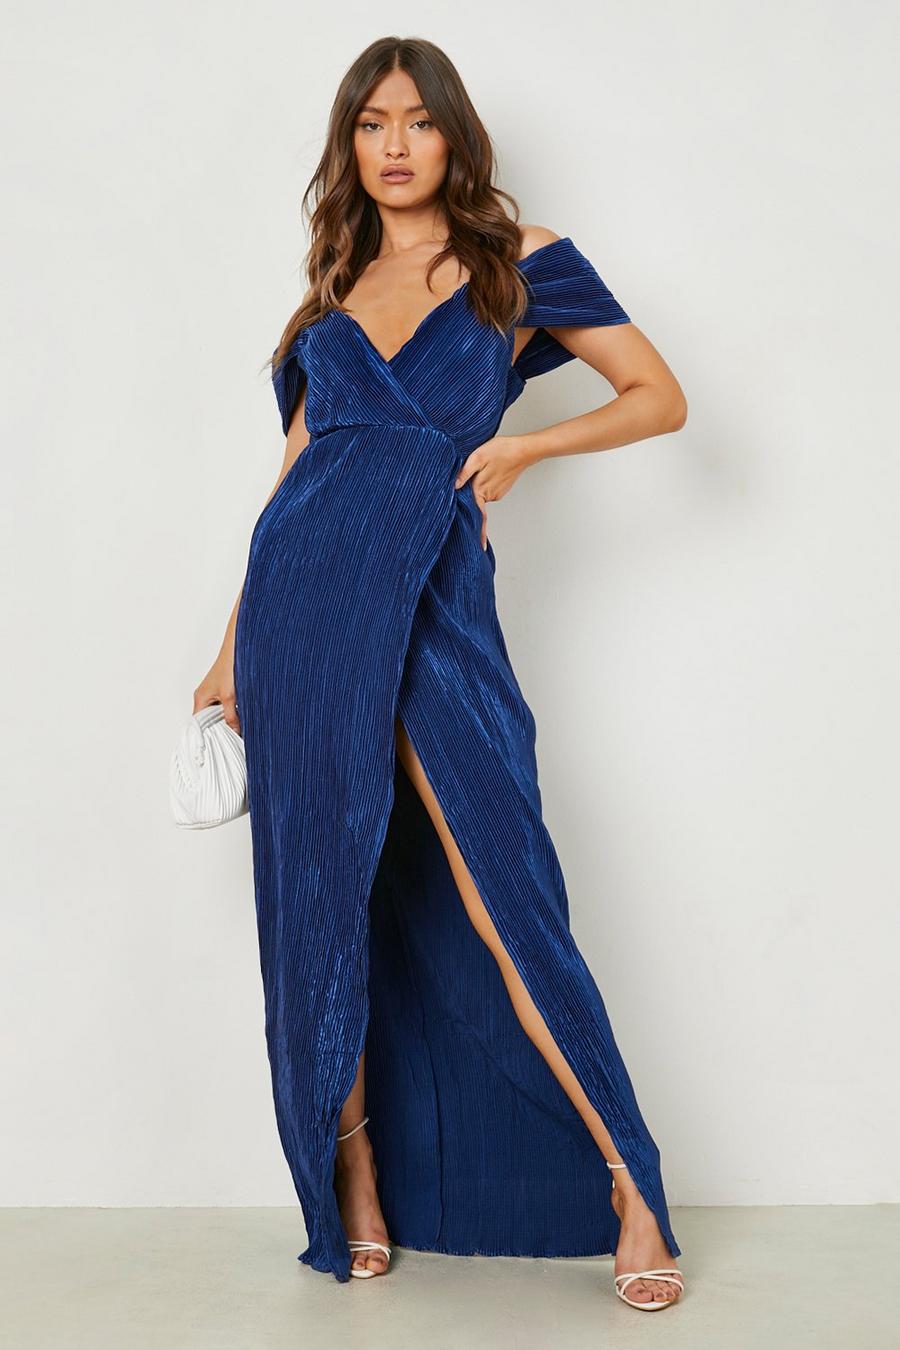 נייבי azul marino שמלת שושבינה בגזרת מעטפת לערבוב והתאמה